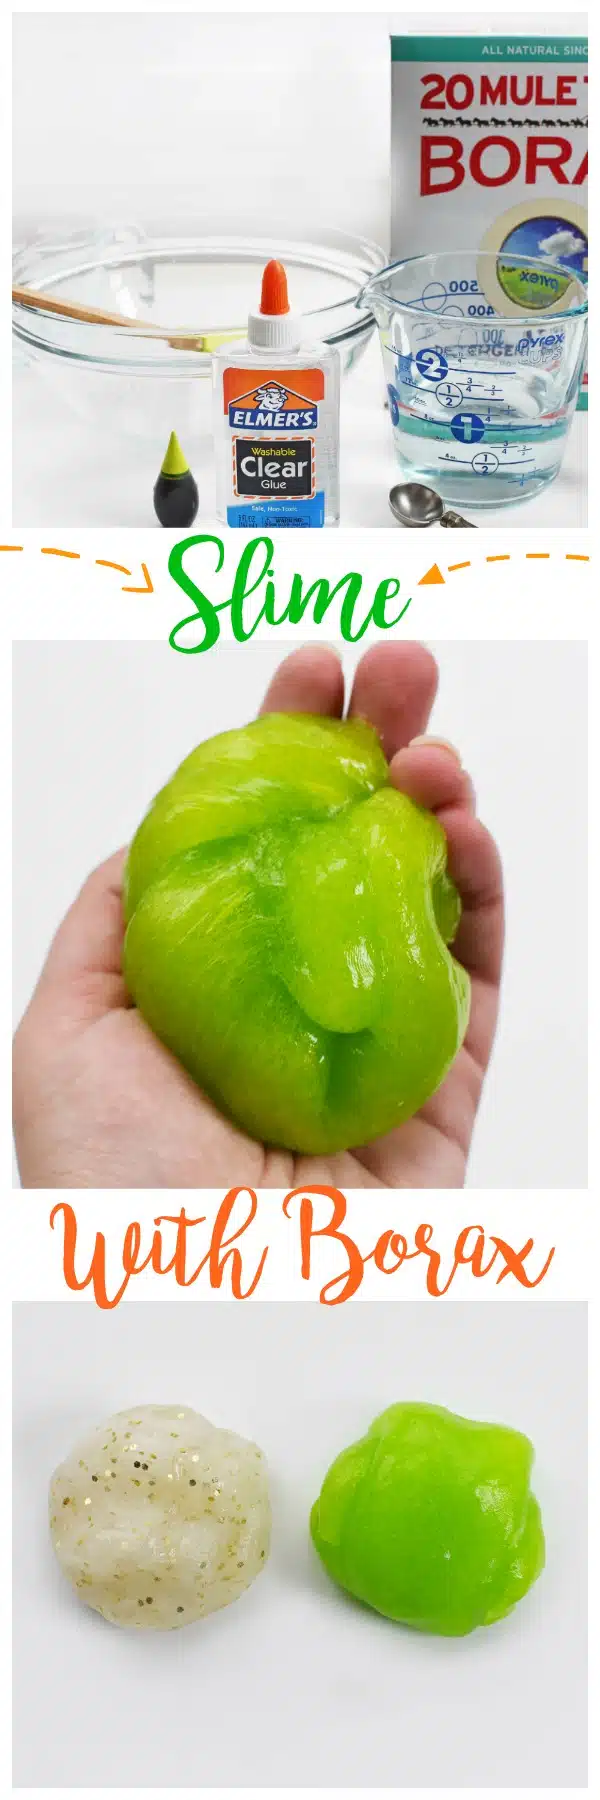 Easy Slime with Borax and Glue - Savvy Saving Couple